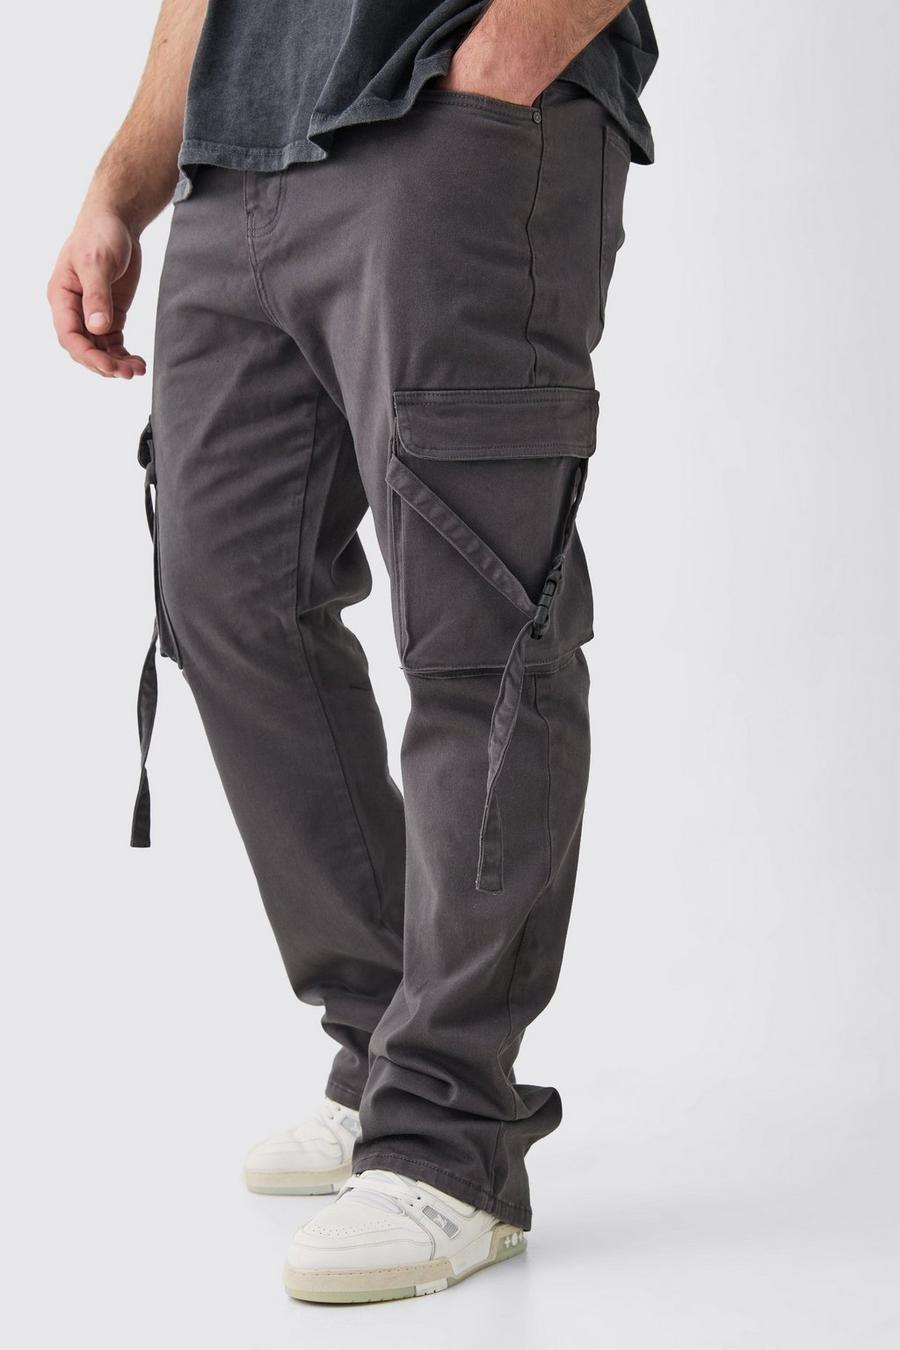 Pantaloni Cargo Plus Size Slim Fit con vita fissa, pieghe sul fondo e spalline svasate, Charcoal